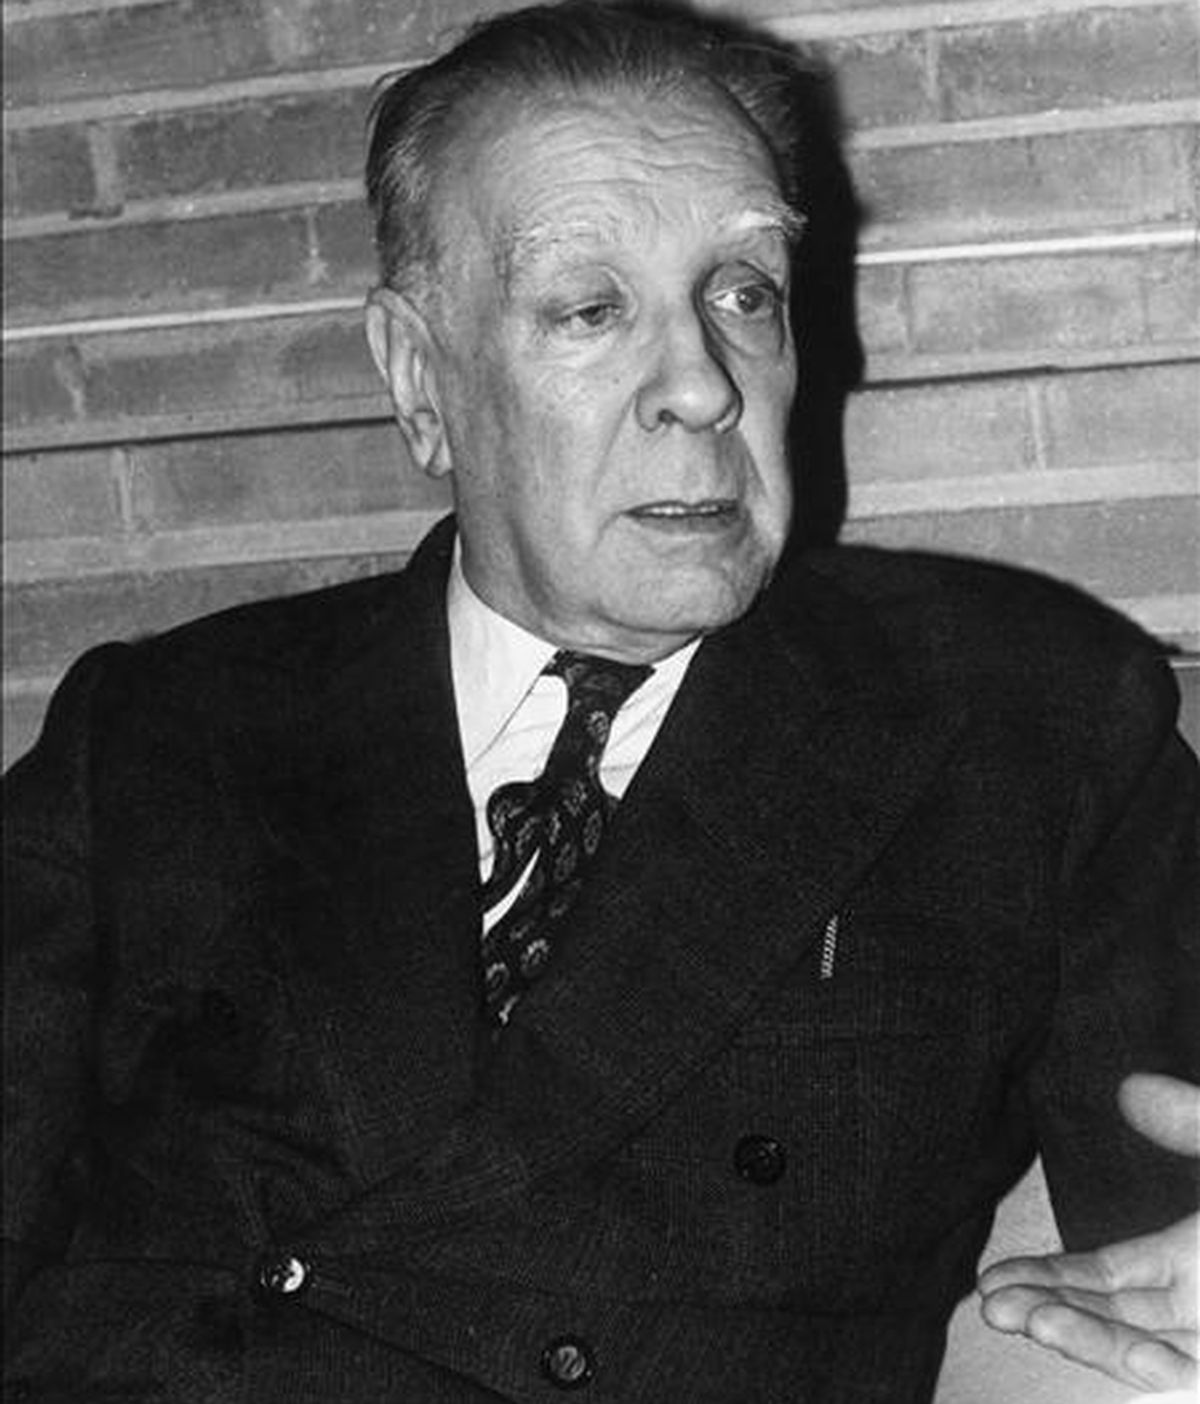 Fotografía de archivo fechada el 24 de abril de 1973 en Madrid del escritor argentino Jorge Luis Borges. EFE/Archivo